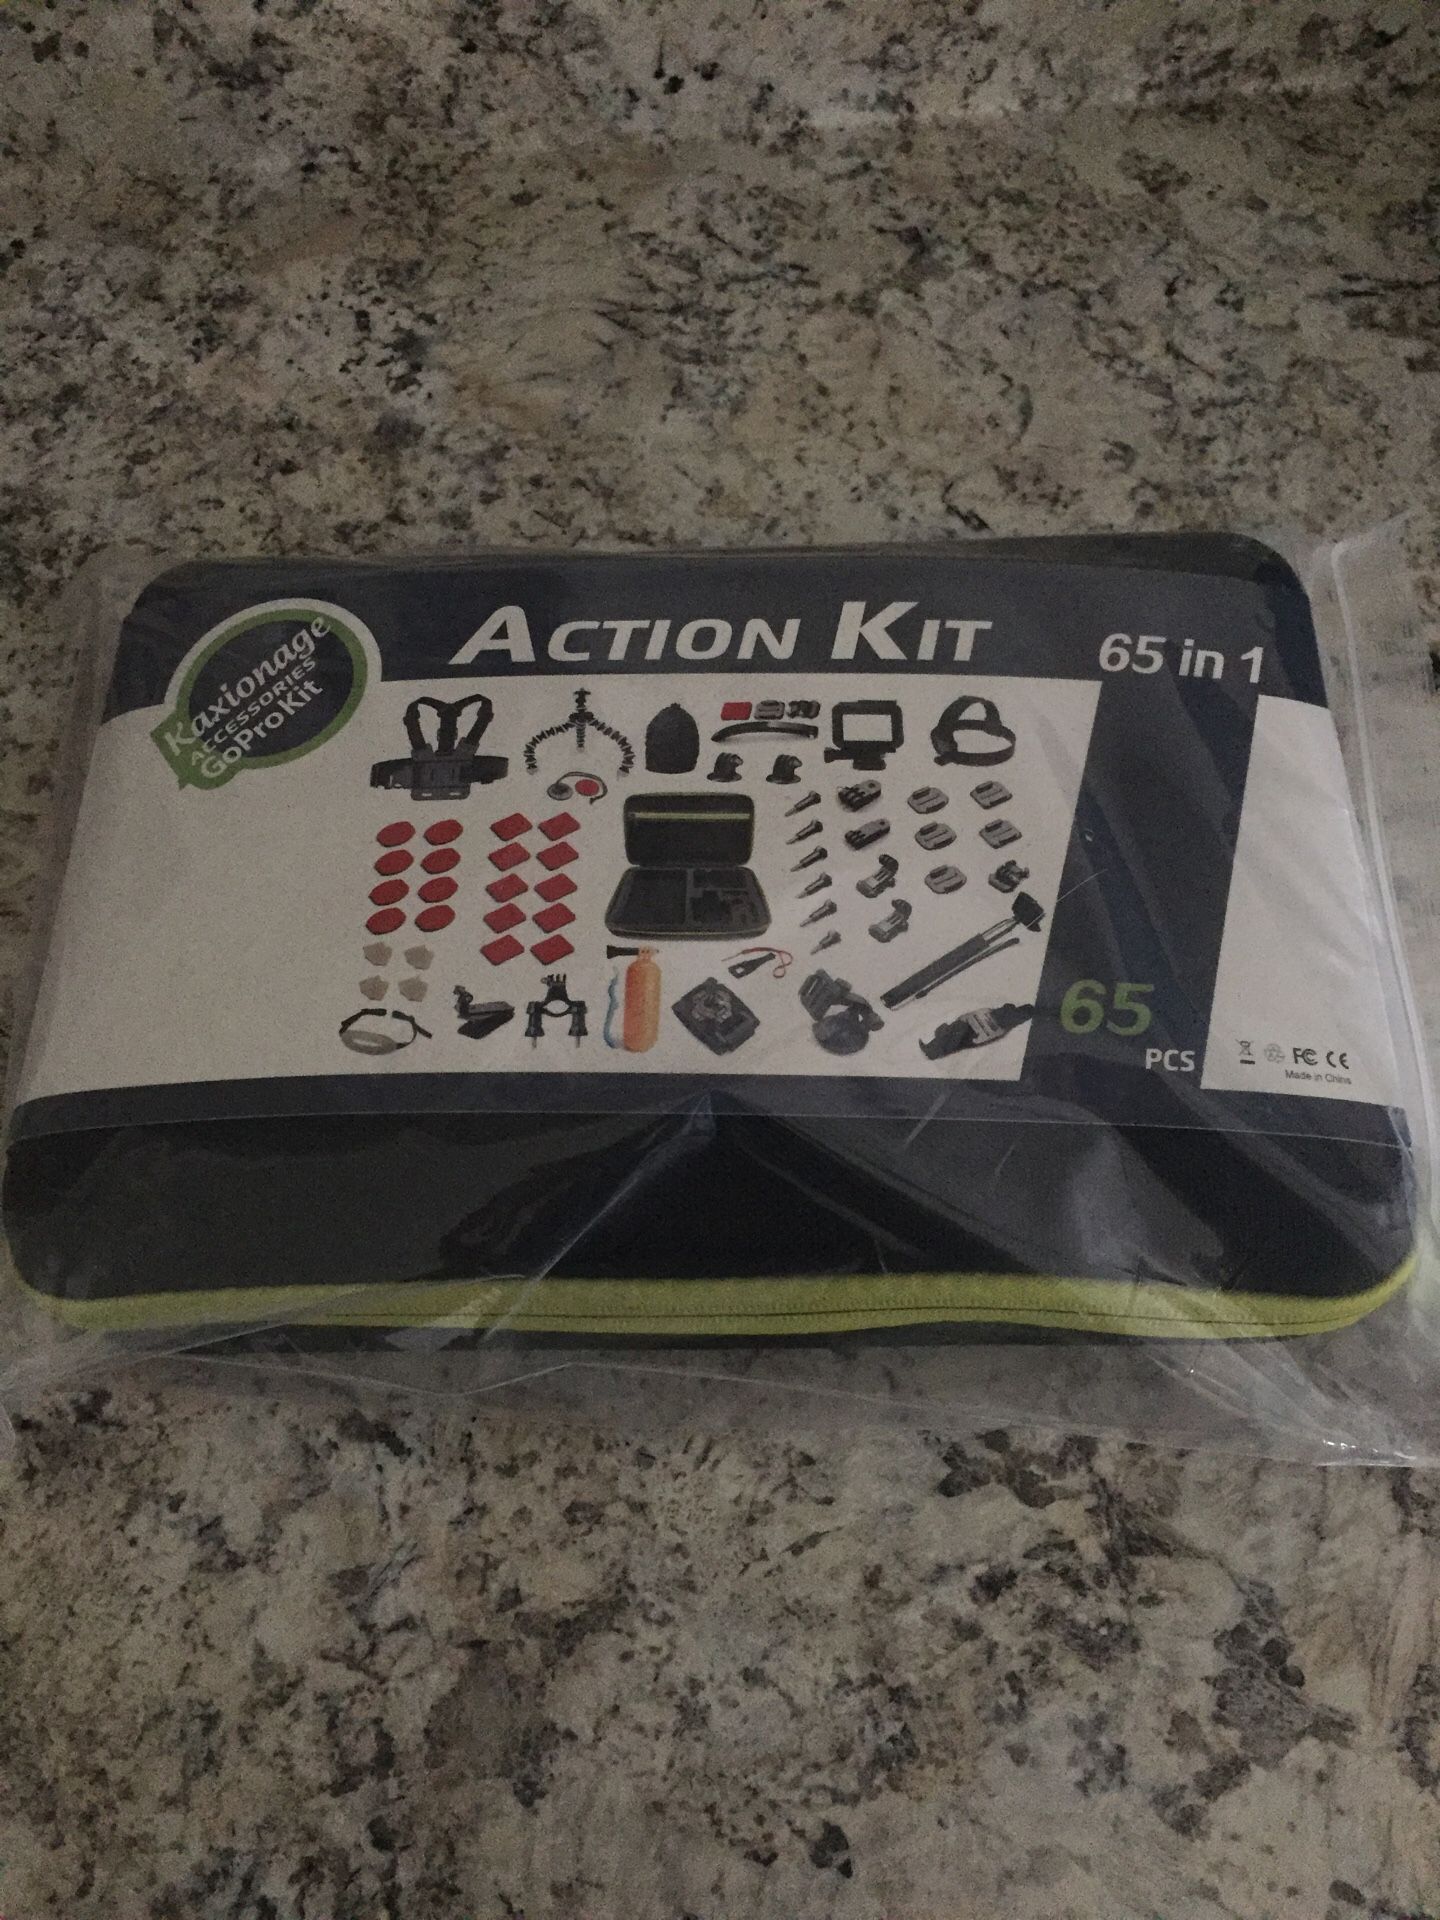 Brand new action kit for GoPro